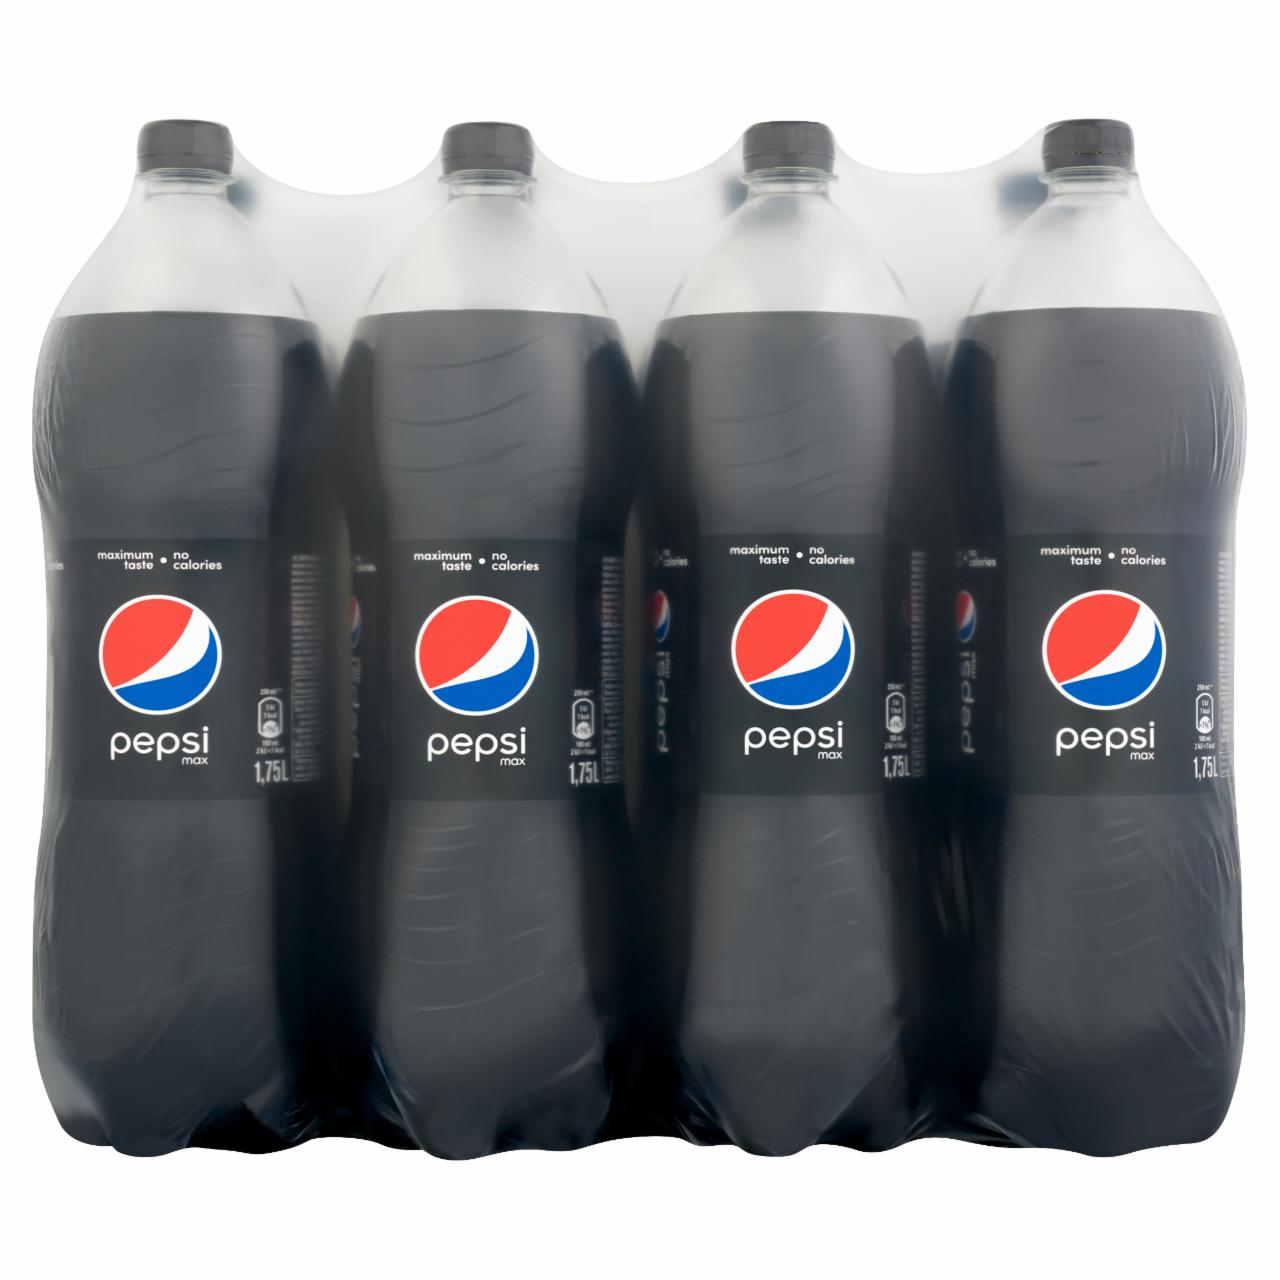 Képek - Pepsi Max colaízű energiamentes szénsavas üdítőital édesítőszerekkel 8 x 1,75 l